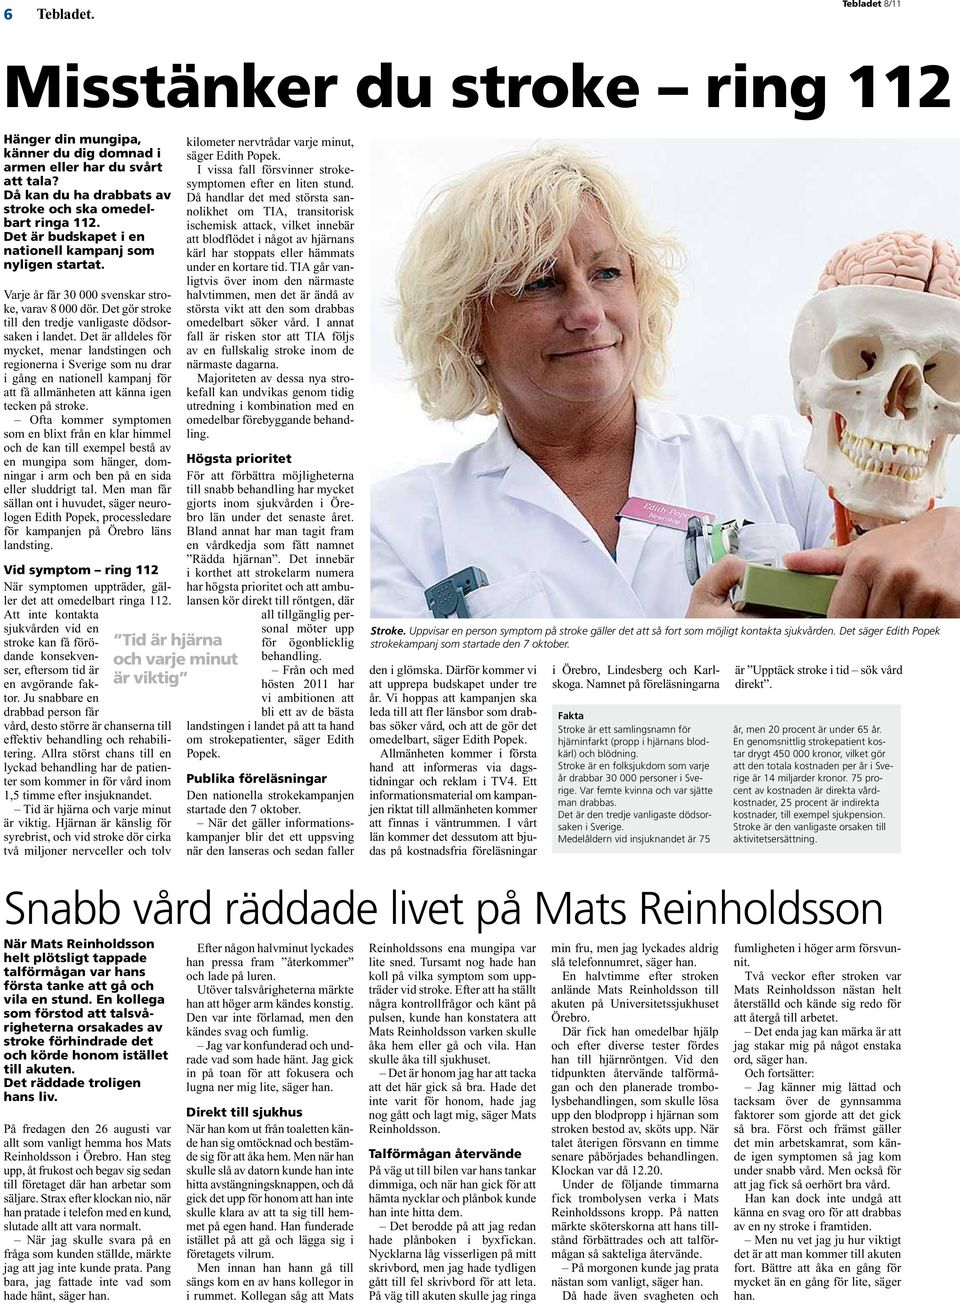 Det är alldeles för mycket, menar landstingen och regionerna i Sverige som nu drar i gång en nationell kampanj för att få allmänheten att känna igen tecken på stroke.